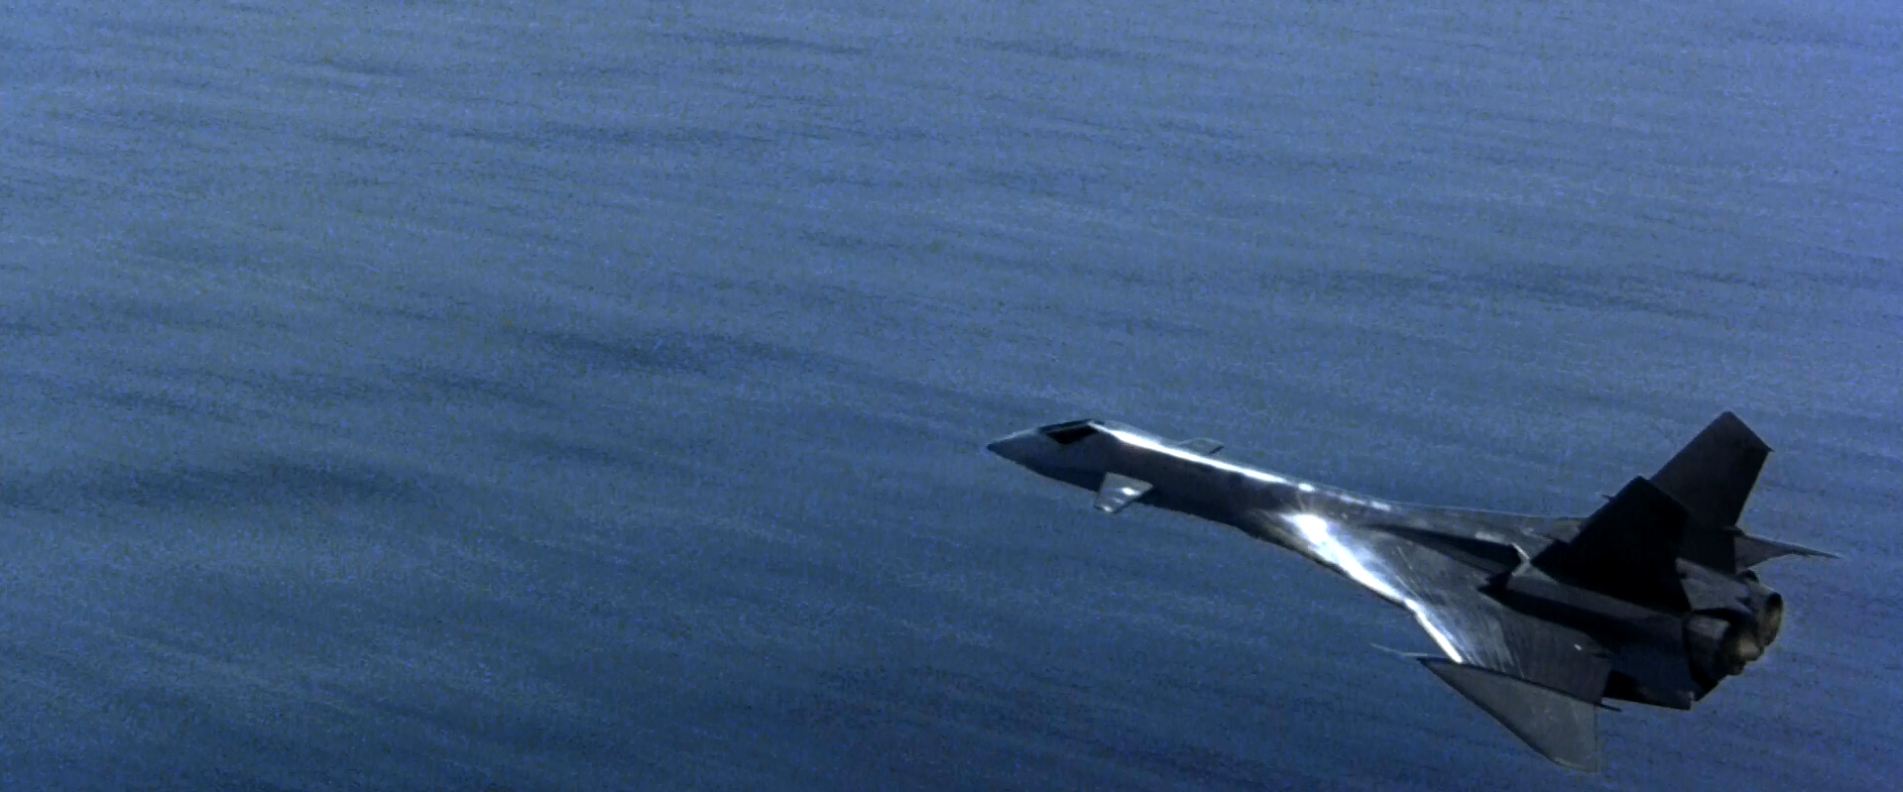 El Mig-31 de la película Firefox podría haber sido claramente un precursor del X-56 Fenix